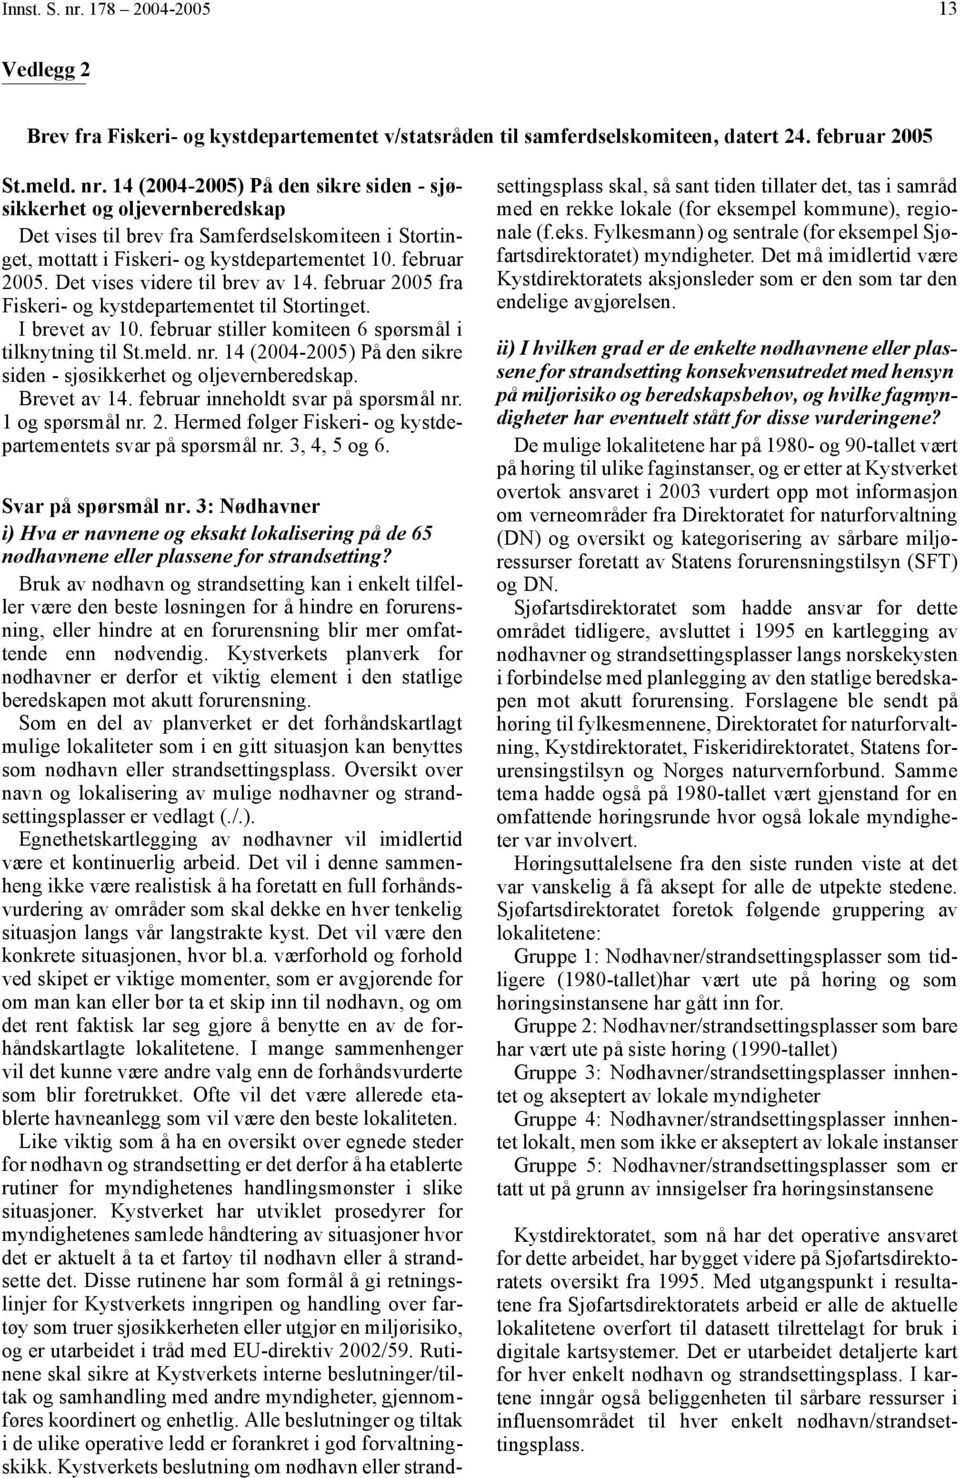 14 (2004-2005) På den sikre siden - sjøsikkerhet og oljevernberedskap. Brevet av 14. februar inneholdt svar på spørsmål nr. 1 og spørsmål nr. 2.